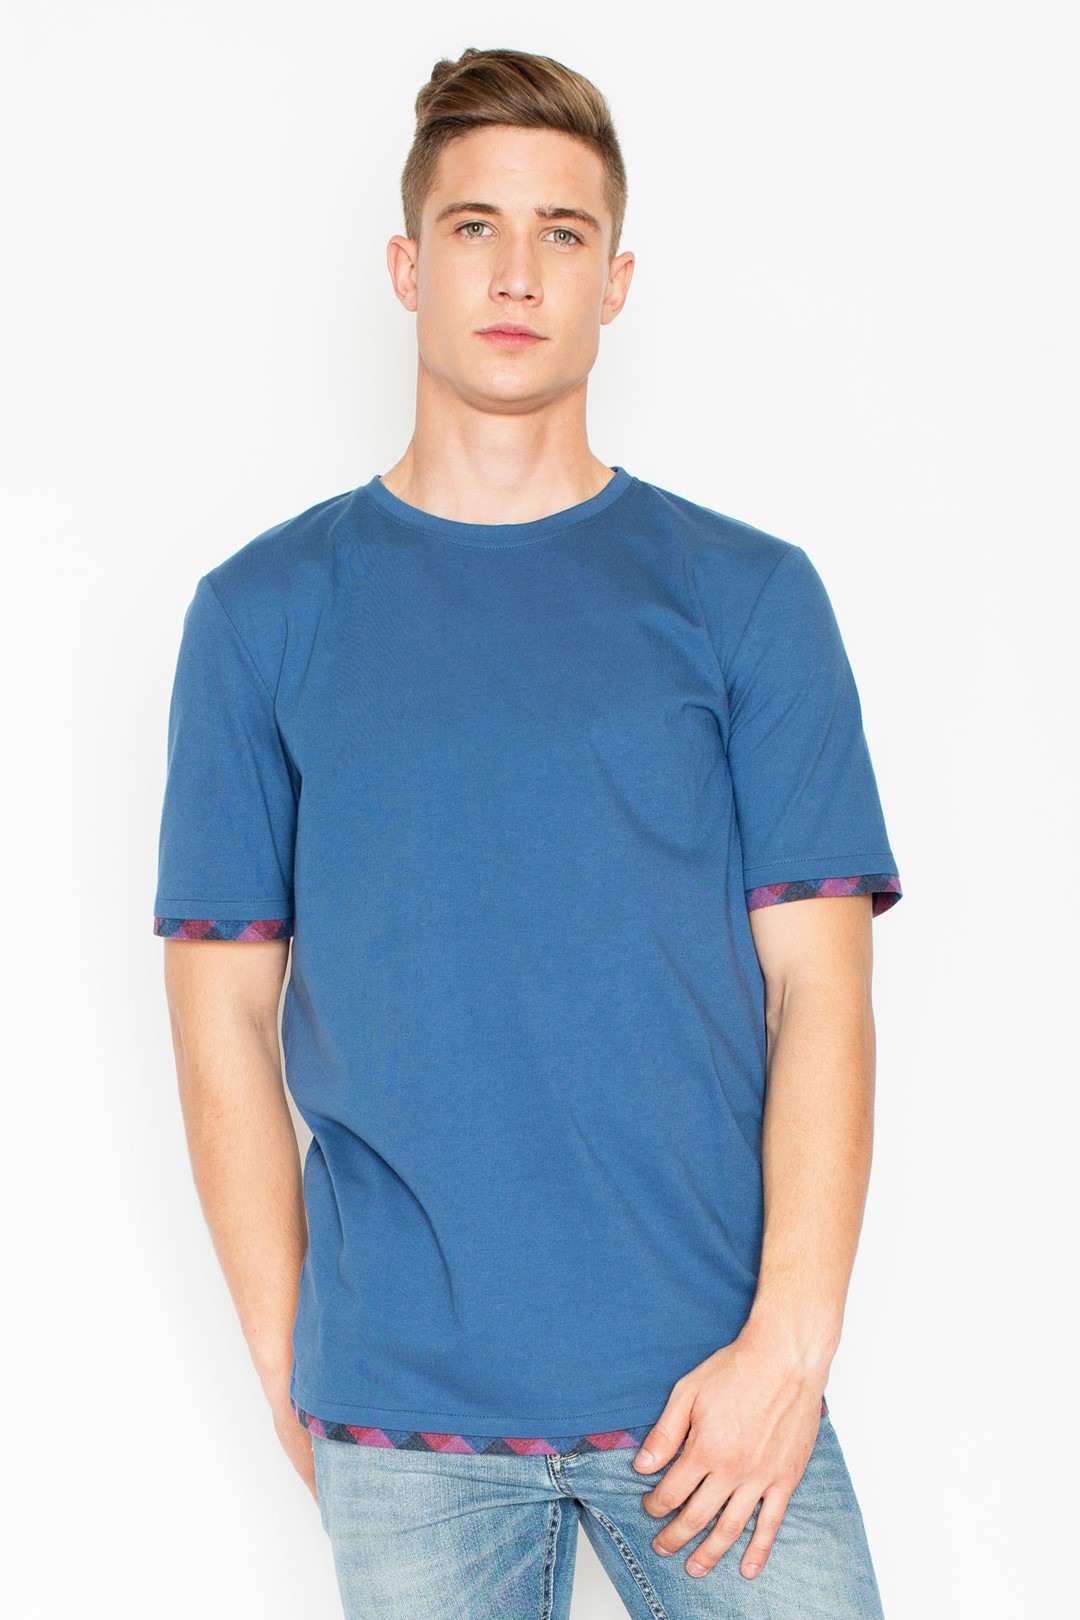 T-shirt V032 Blue XXL